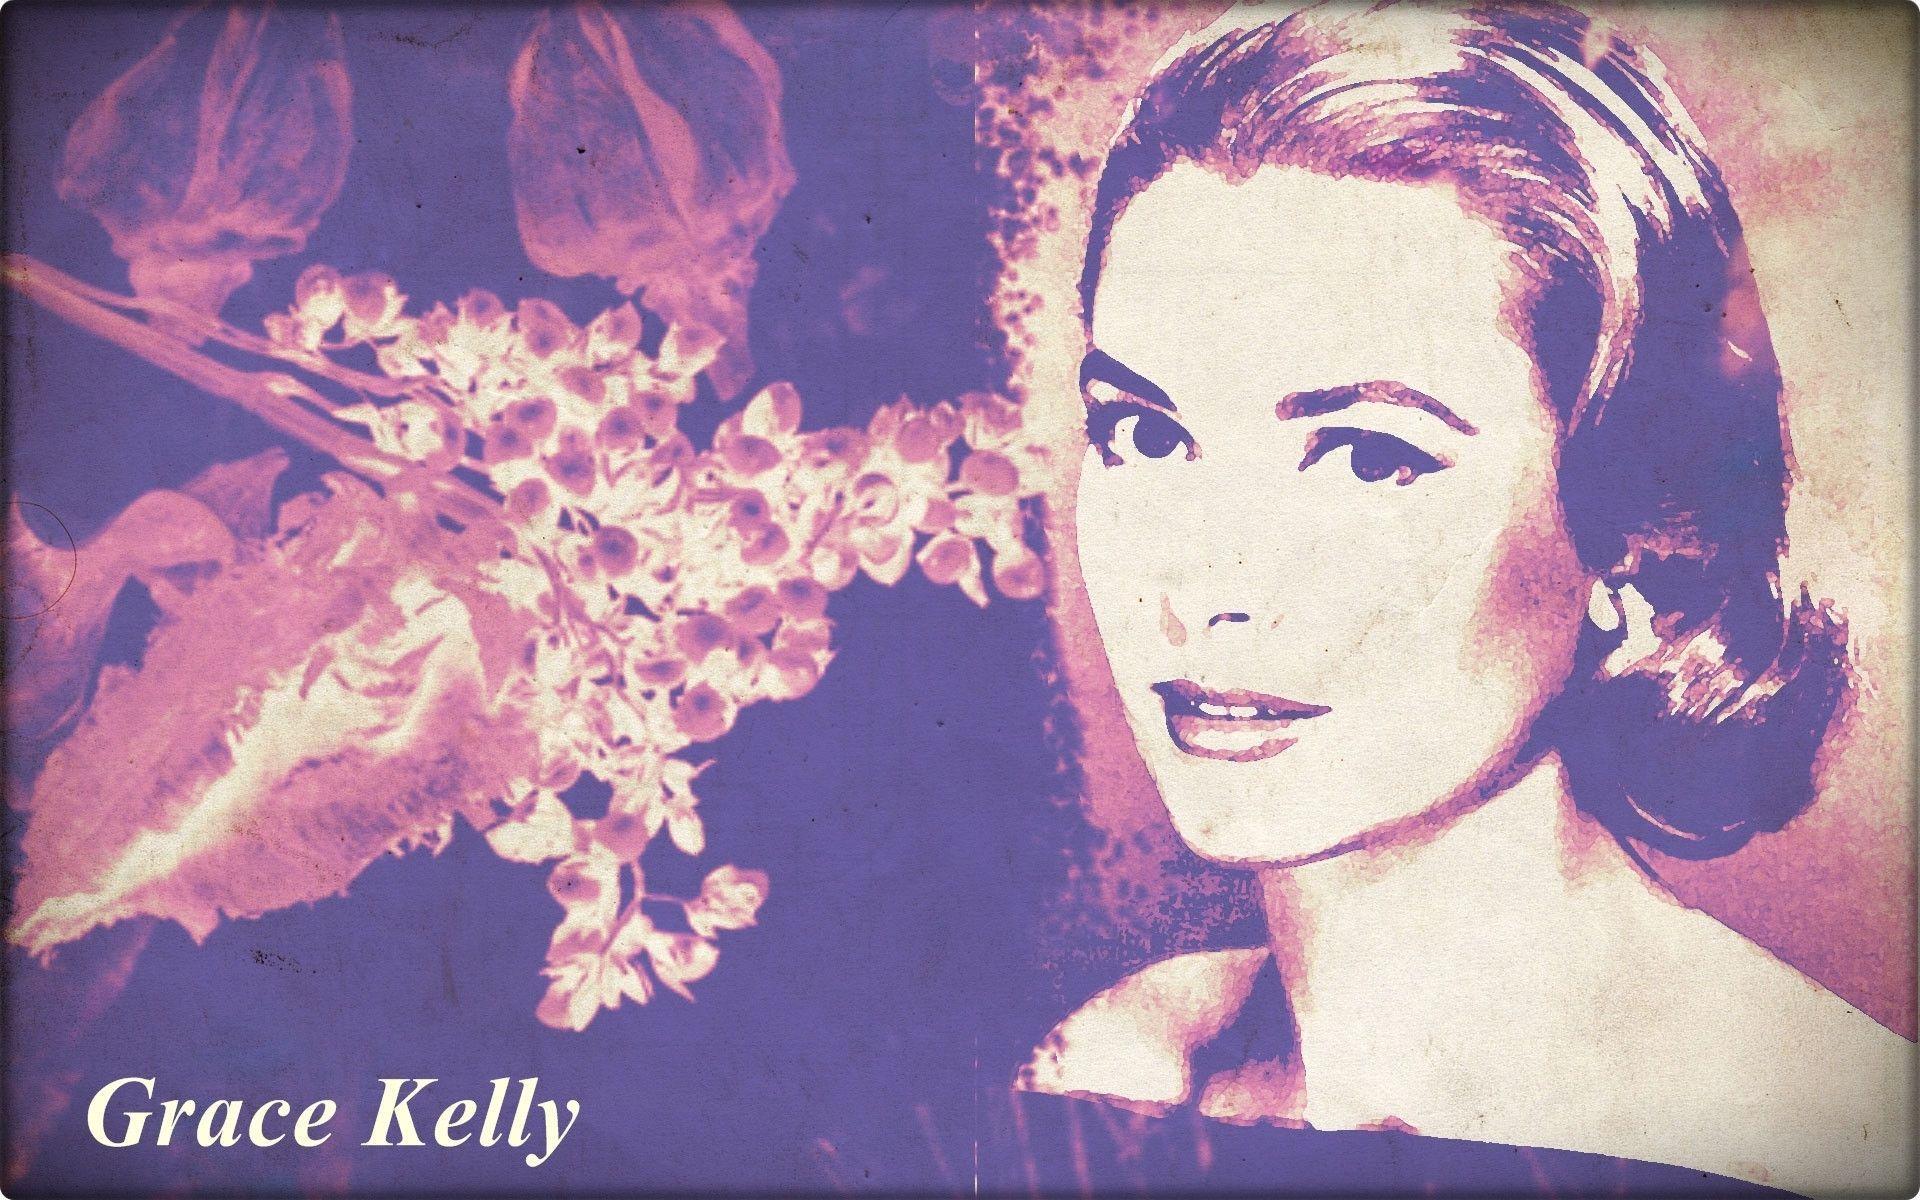 Grace Kelly Kelly Wallpaper